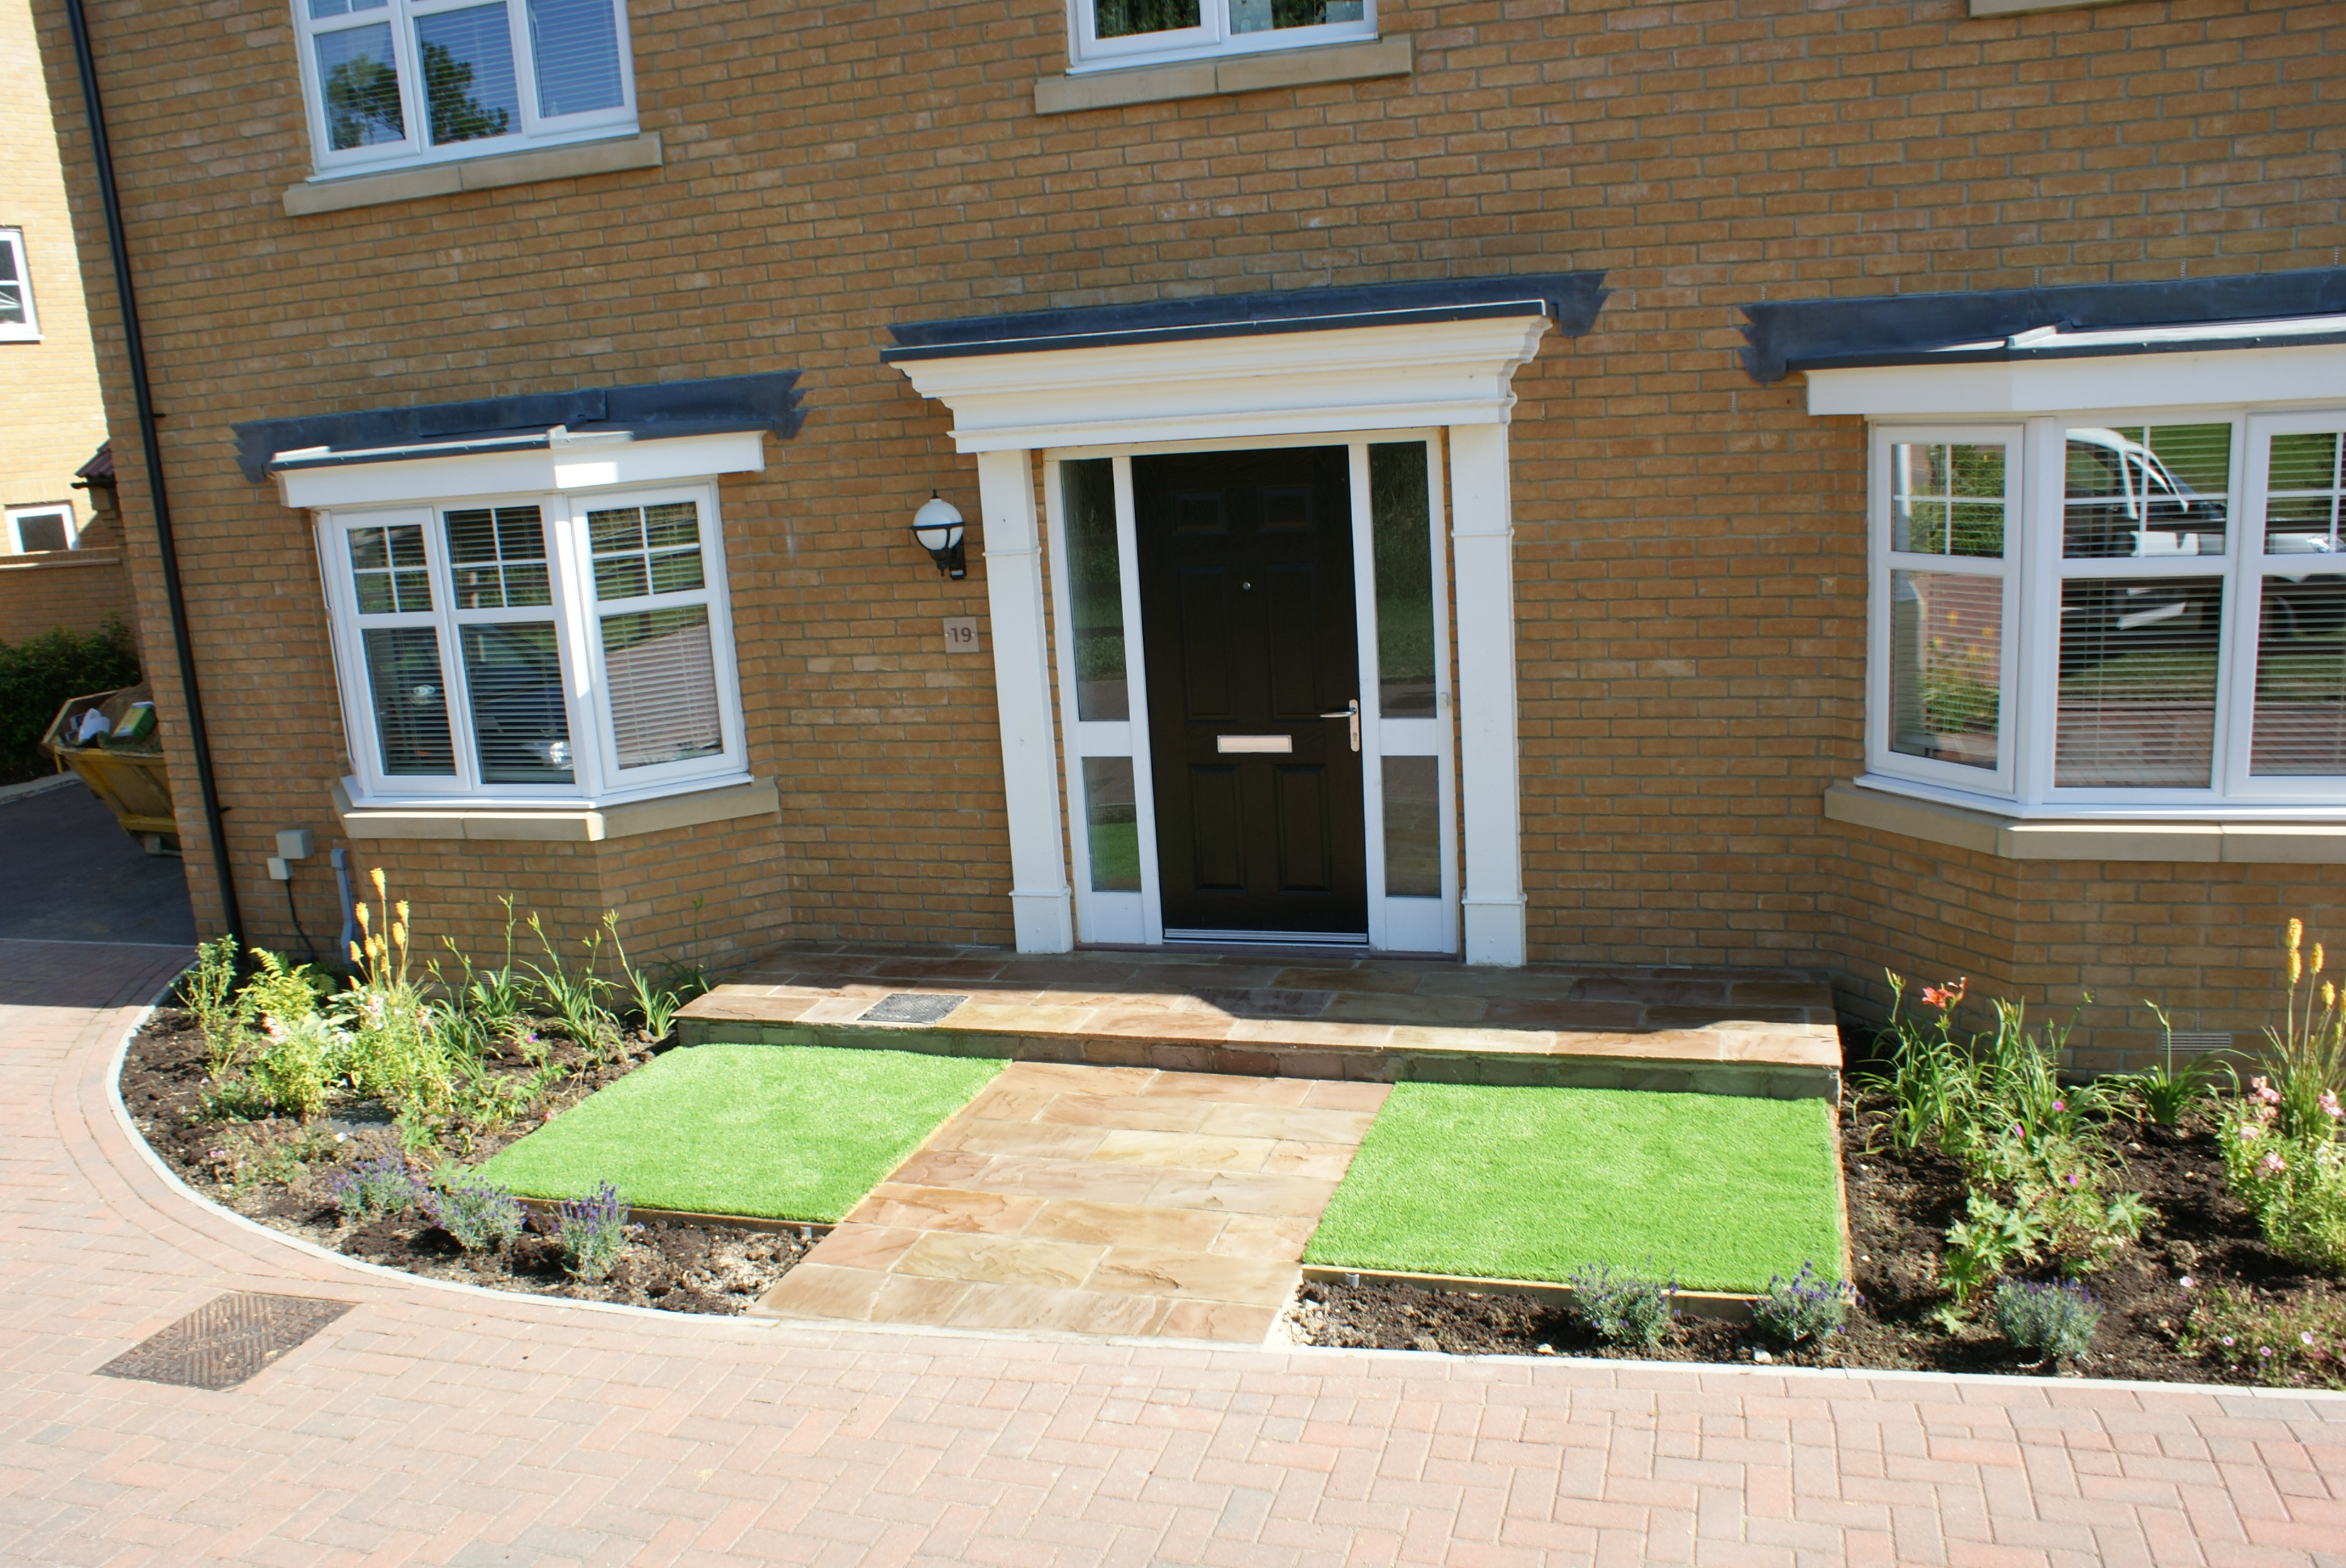 Design for a small front garden in Longstanton | Garden ...